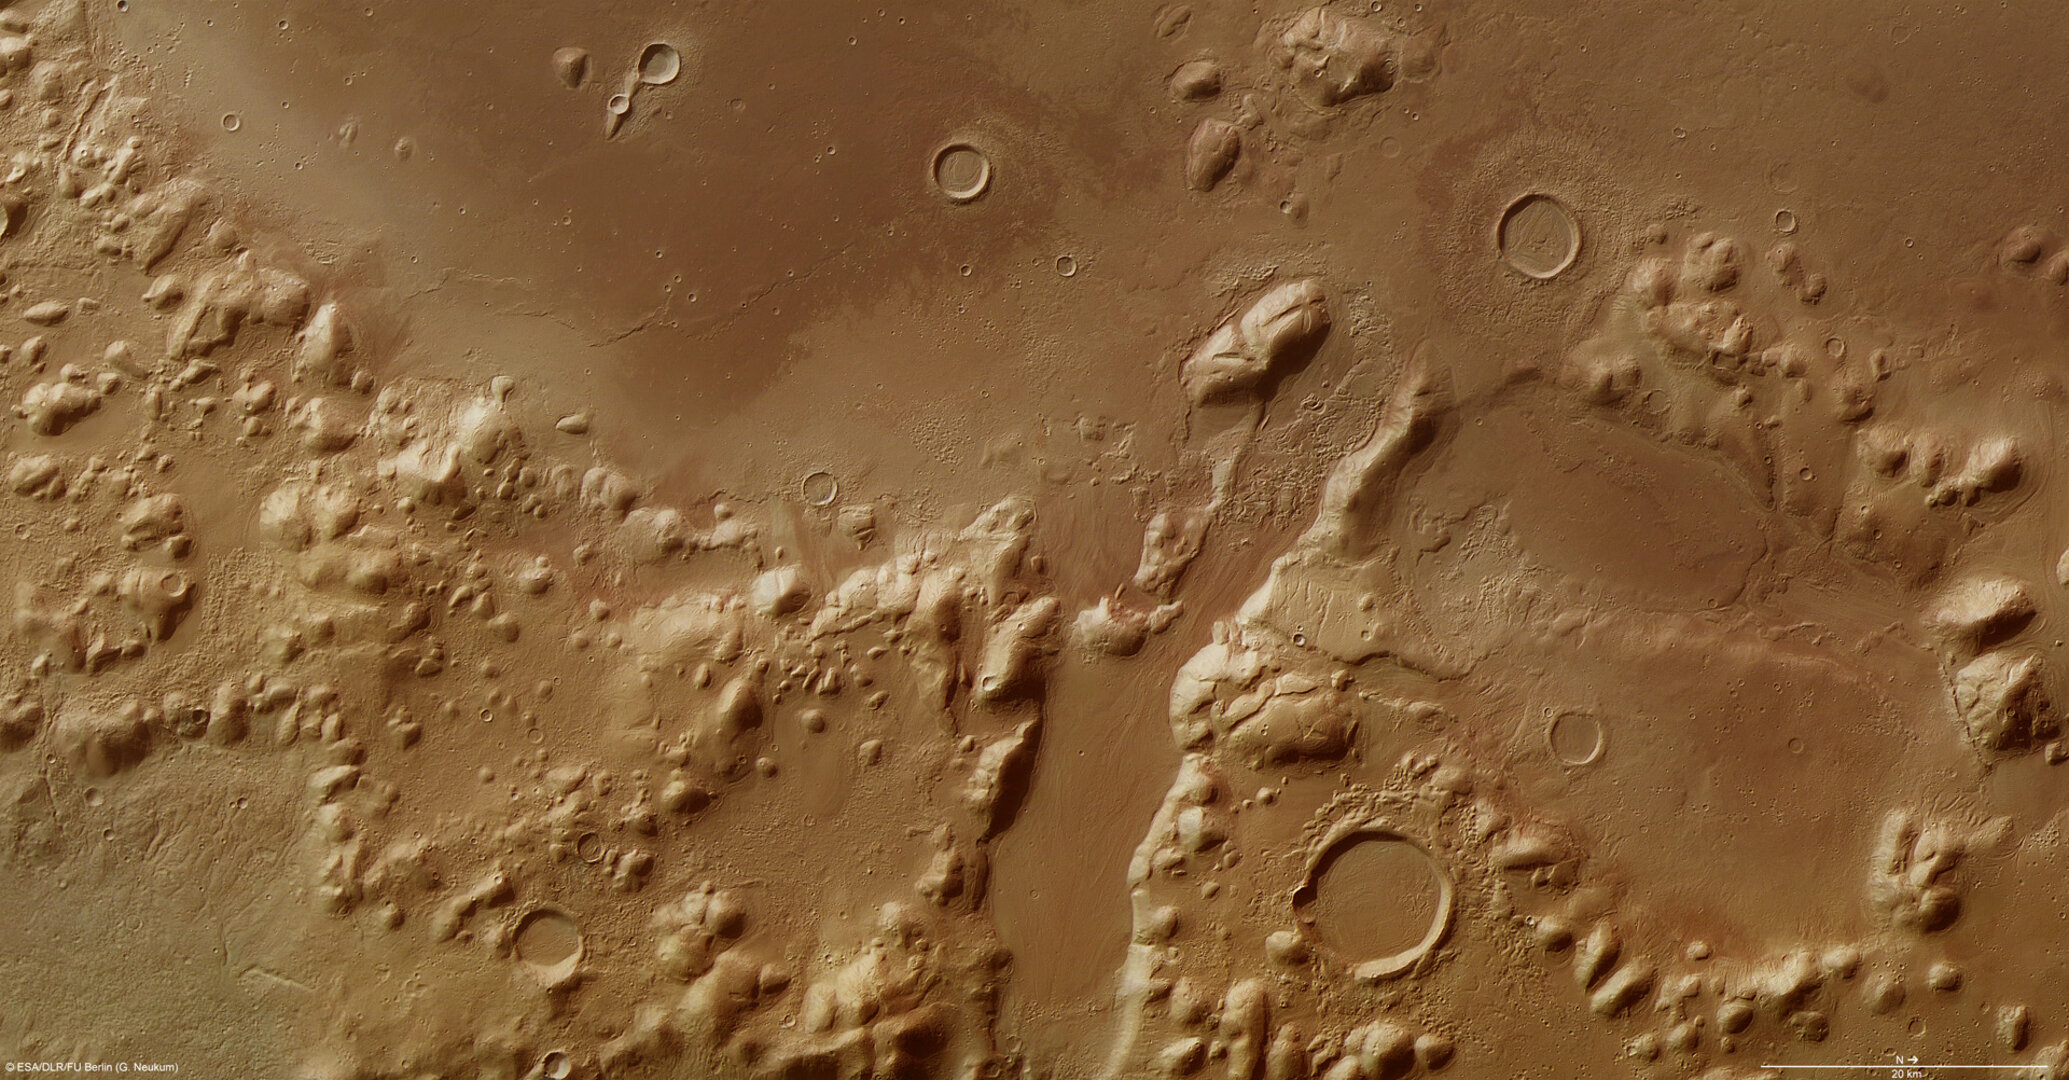 Pohoří Phlegra Montes na Marsu.